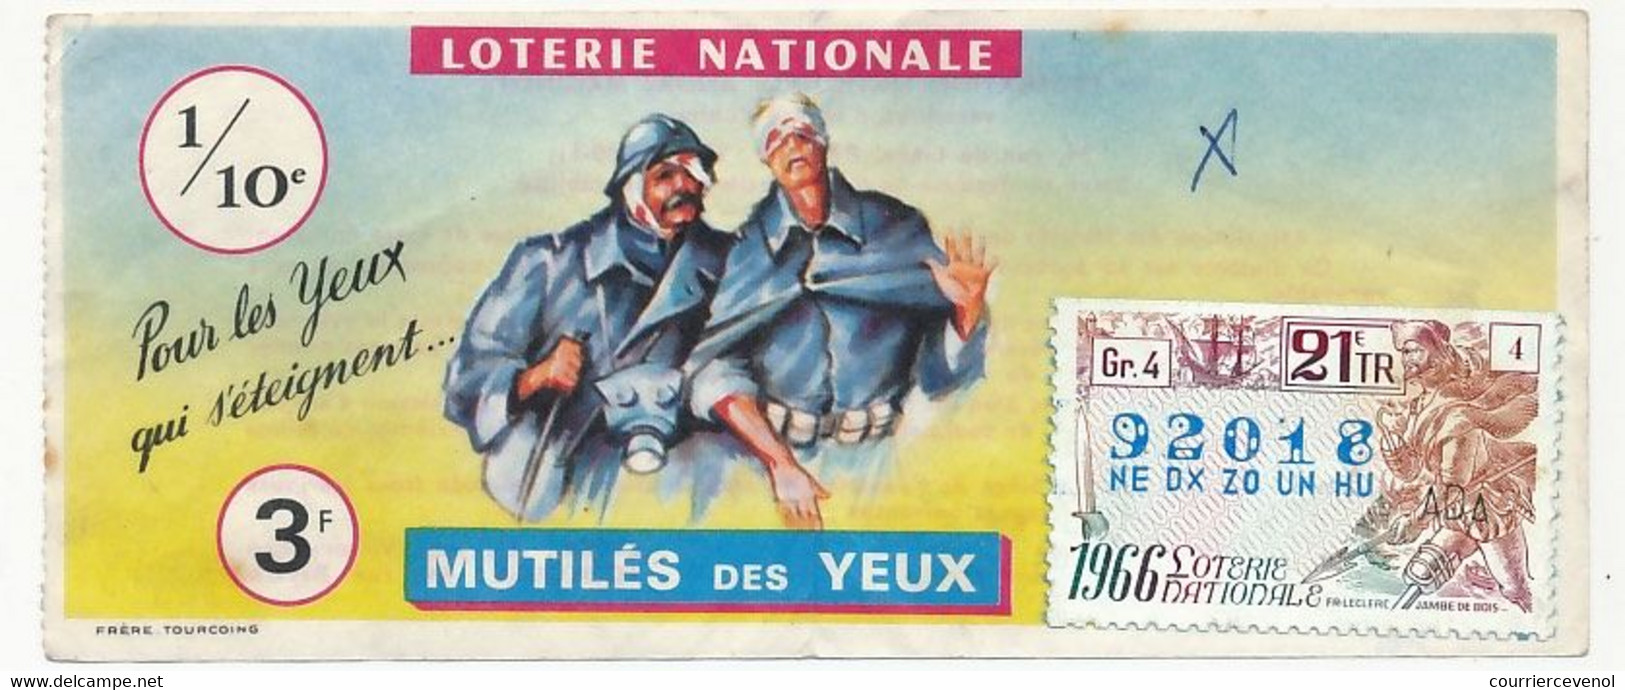 FRANCE - Loterie Nationale - 1/10ème - Mutilés Des Yeux - 21eme Tranche 1966 - Lotterielose